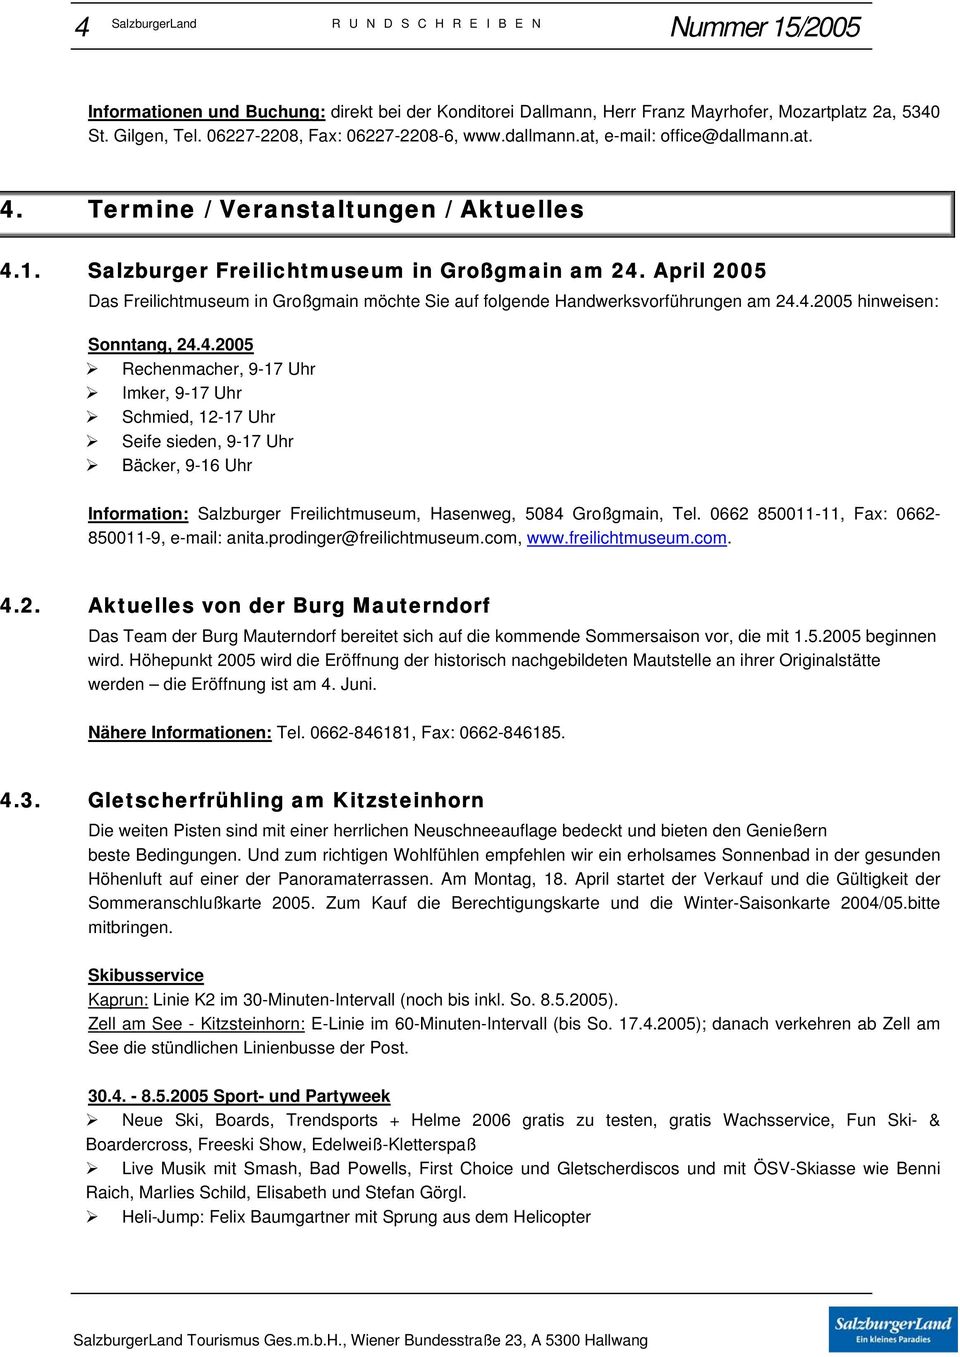 April 2005 Das Freilichtmuseum in Großgmain möchte Sie auf folgende Handwerksvorführungen am 24.